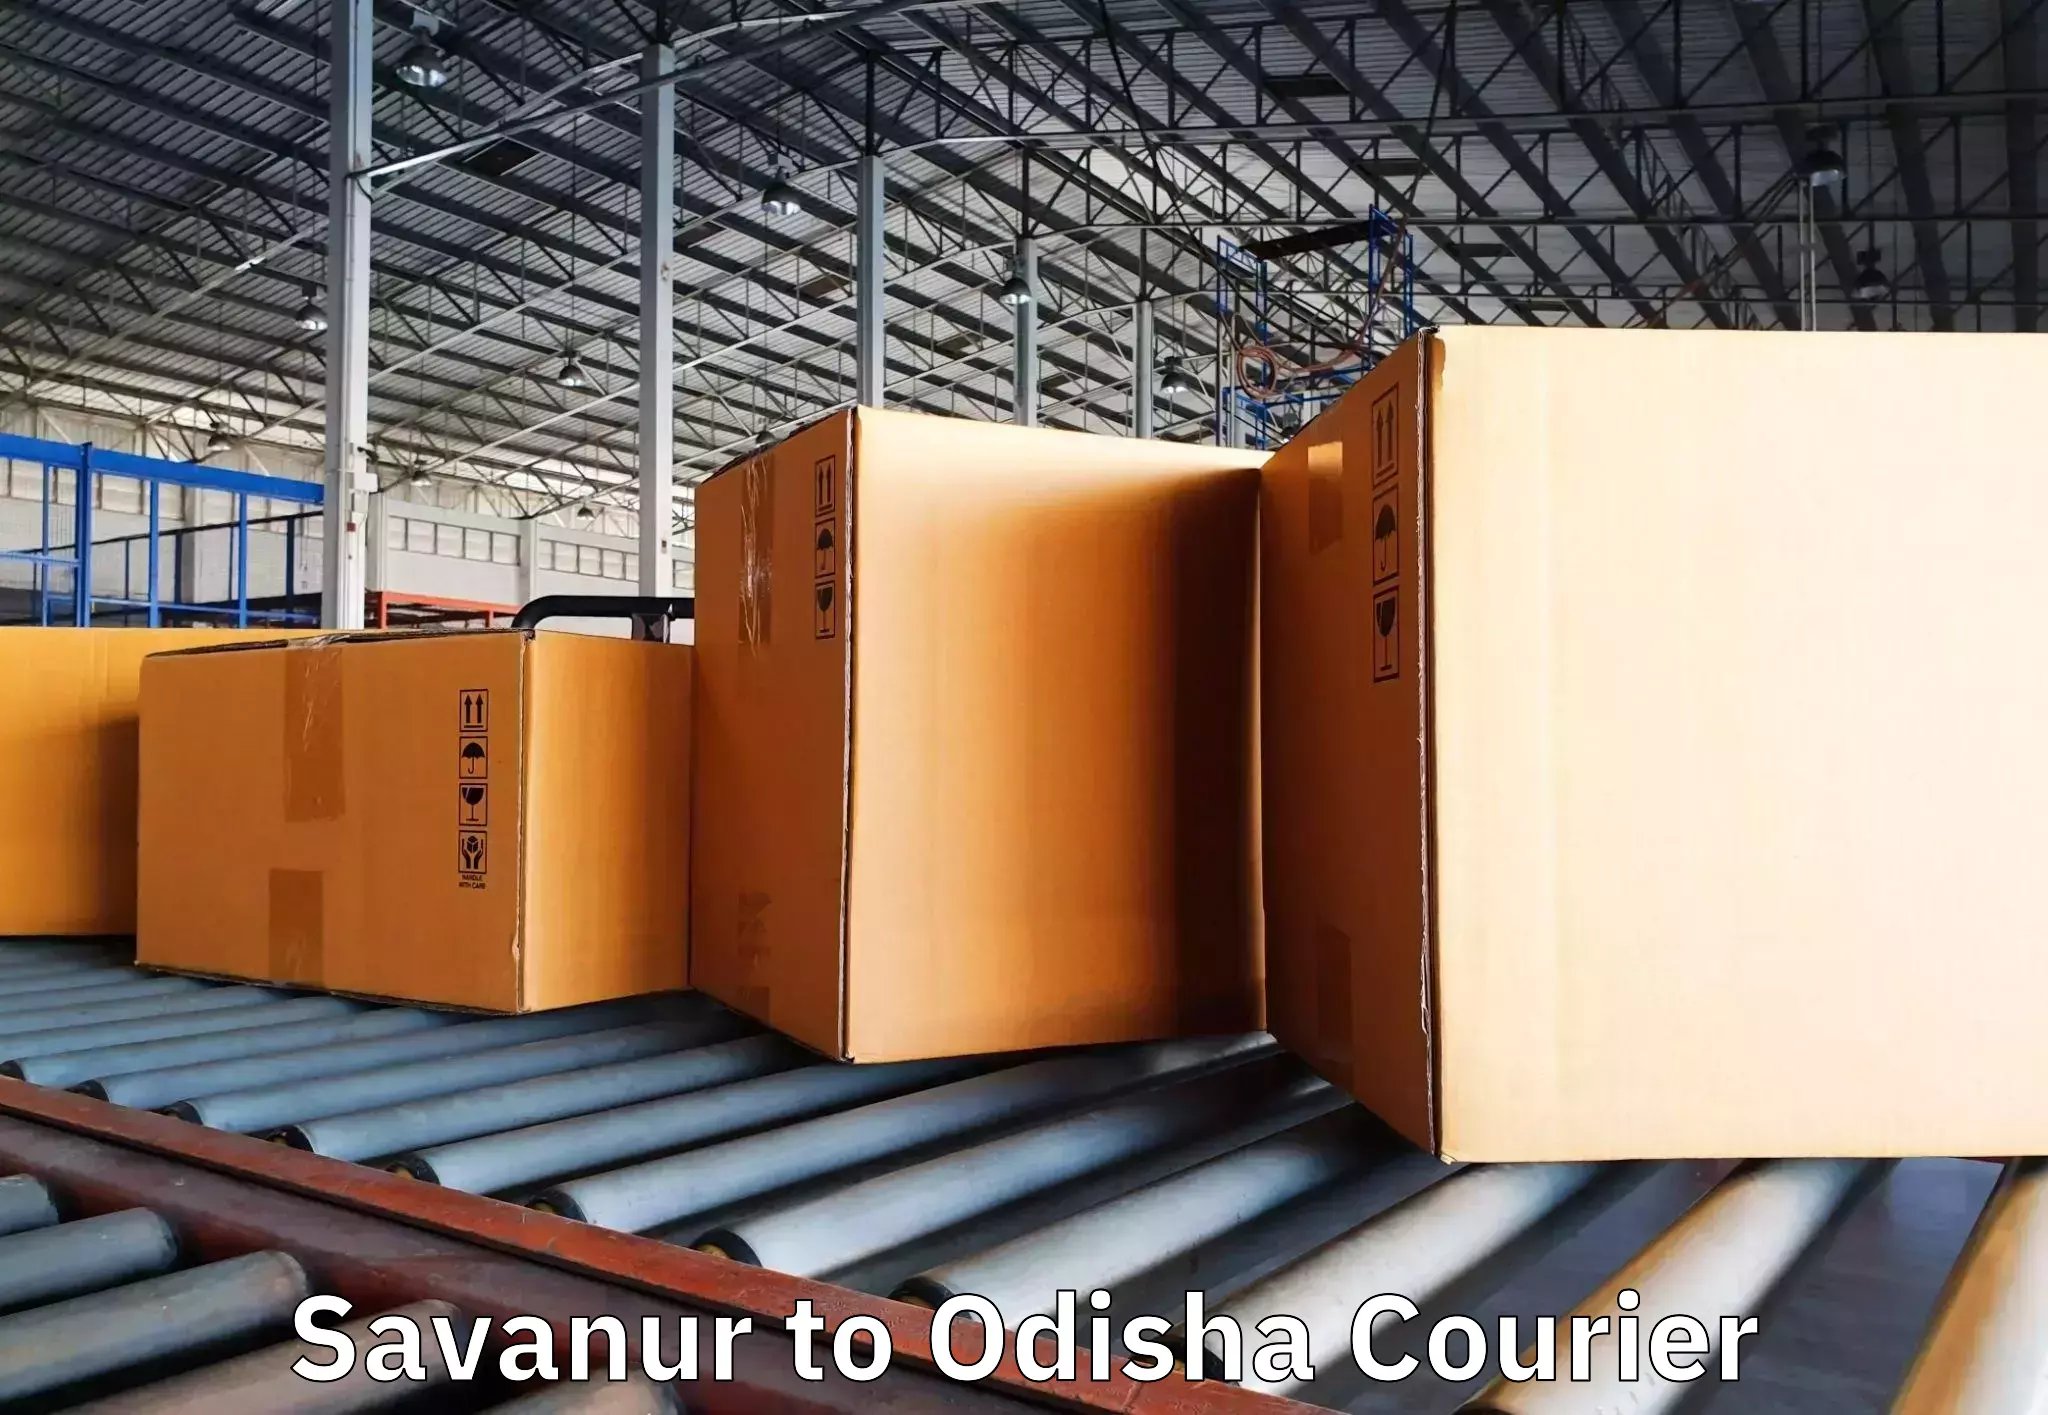 Furniture moving experts Savanur to Tangi